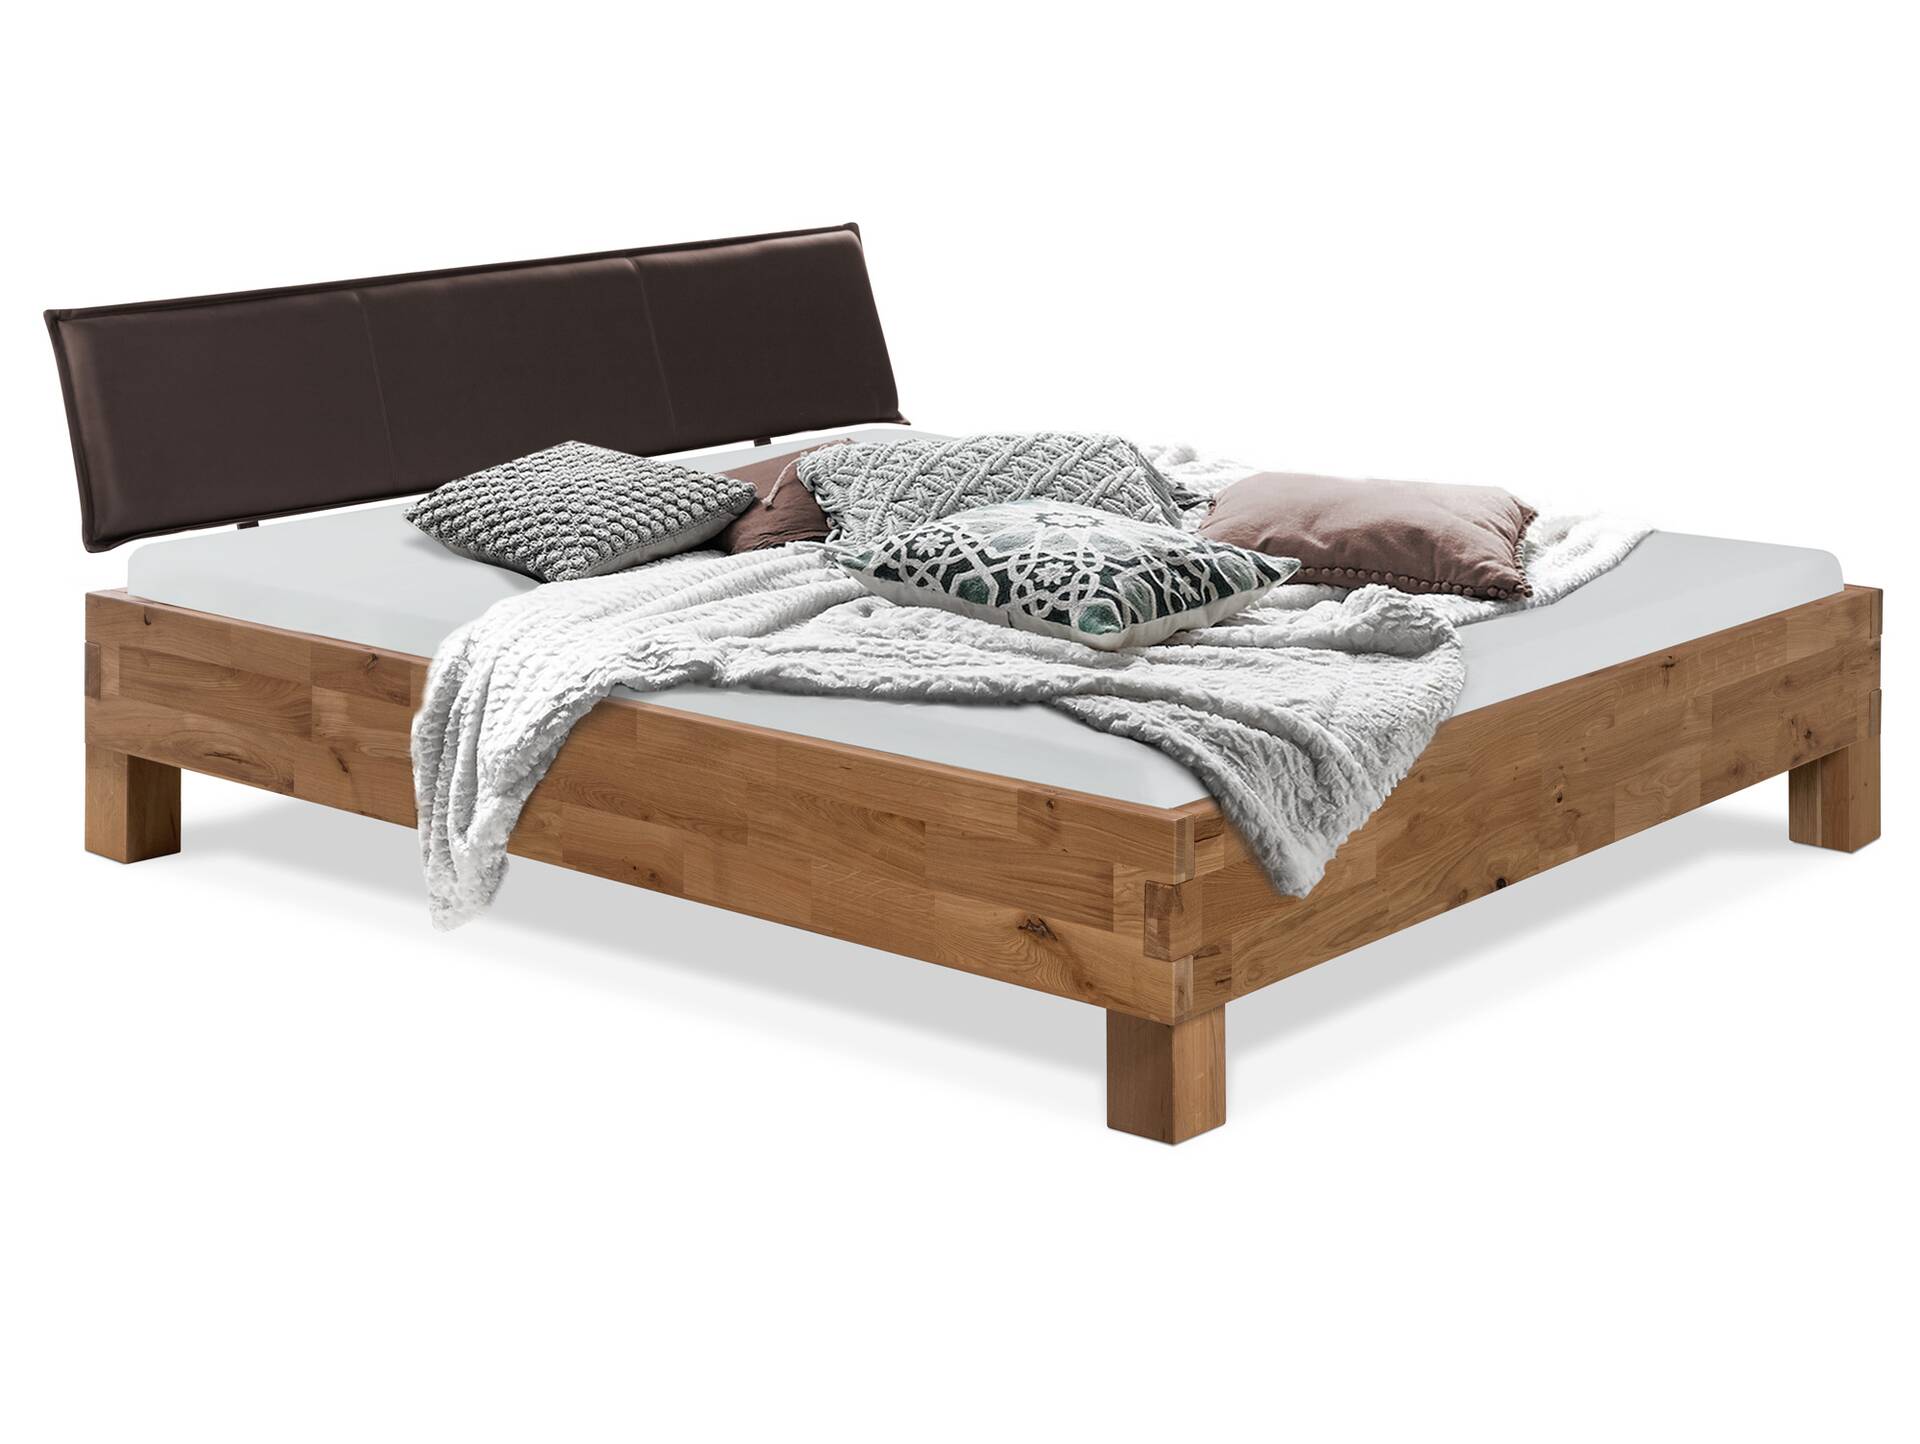 CORDINO 4-Fuß-Bett aus Eiche mit Polster-Kopfteil, Material Massivholz 160 x 200 cm | Eiche lackiert  | Kunstleder Braun ohne Steppung | gebürstet